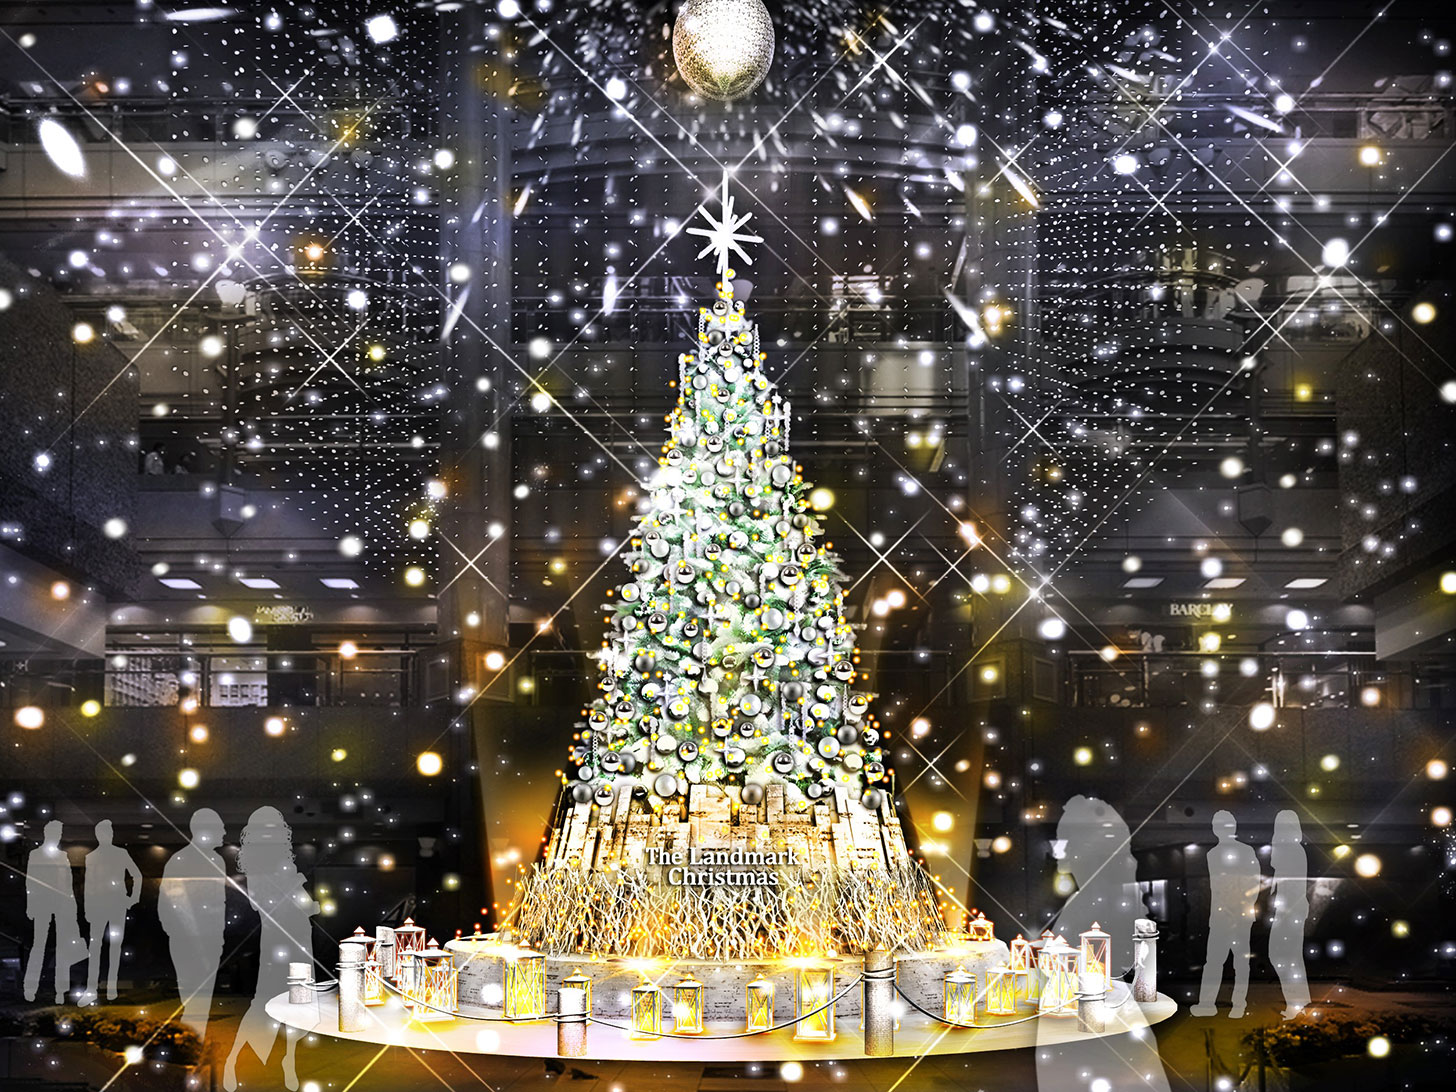 2019年 横浜ランドマークタワーにクリスマスツリー登場！降雪イベントも